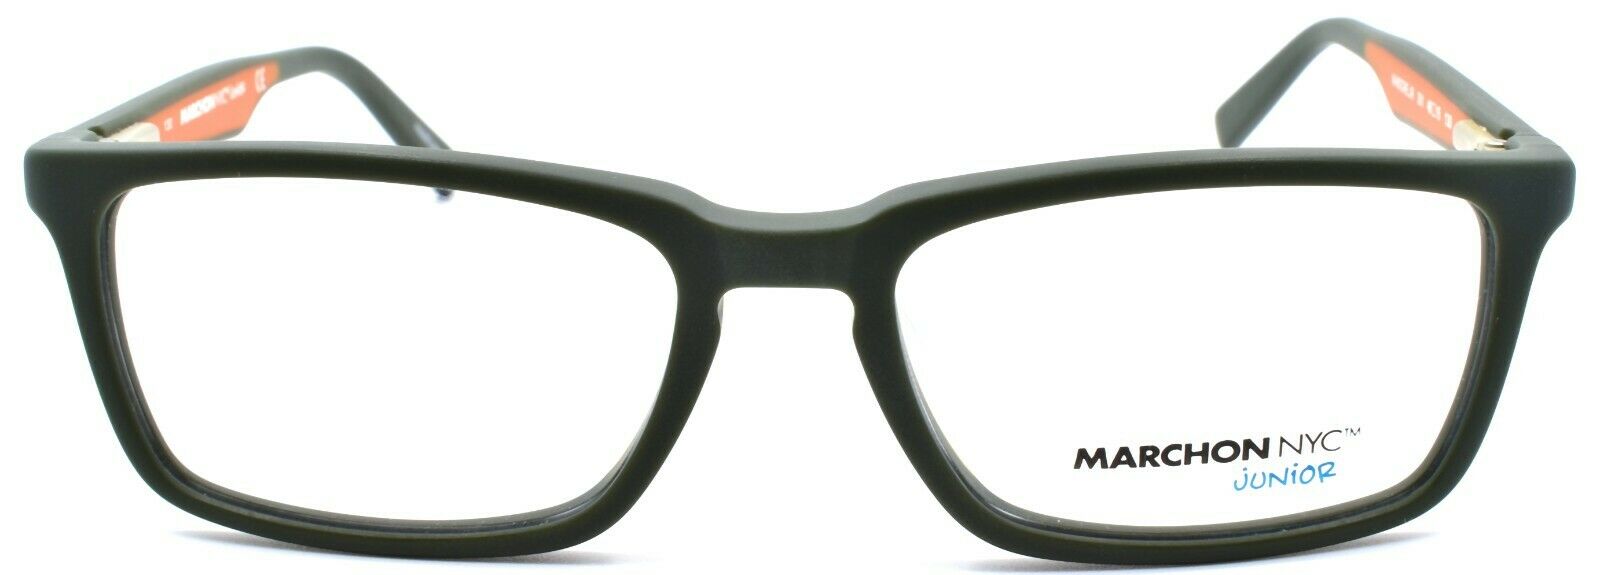 2-Marchon M-Moore Jr Kids Boys Eyeglasses Frames 48-15-130 Matte Olive-886895469869-IKSpecs